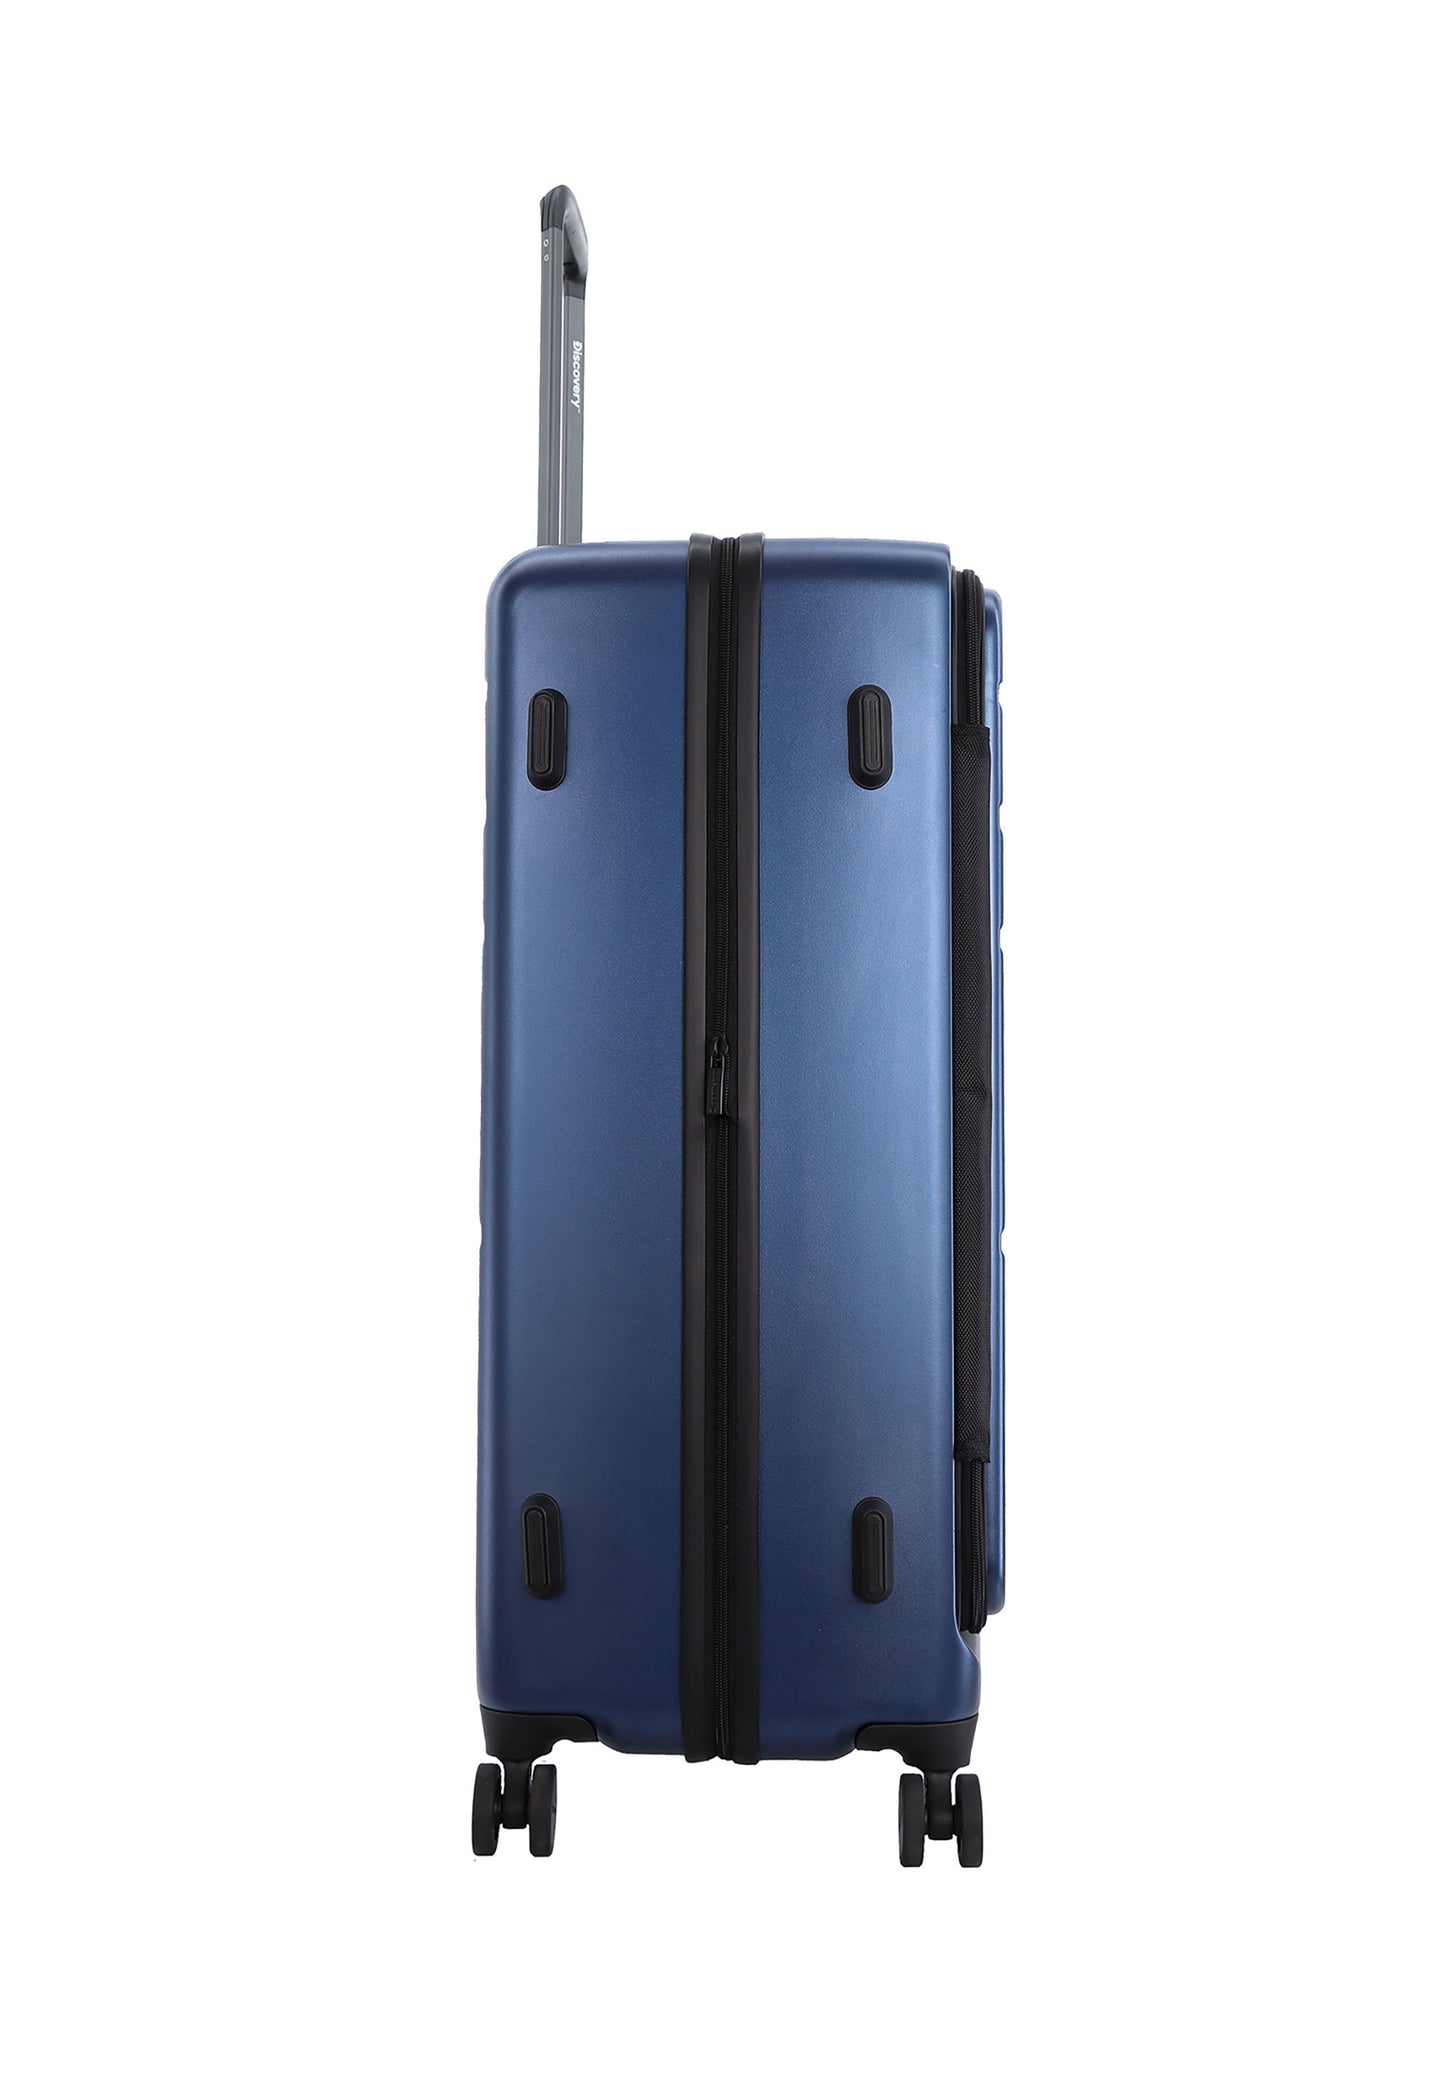 Ensemble de valises rigides Discovery 3 pièces/ensemble de chariot/ensemble de valises de voyage - Patrol - Bleu